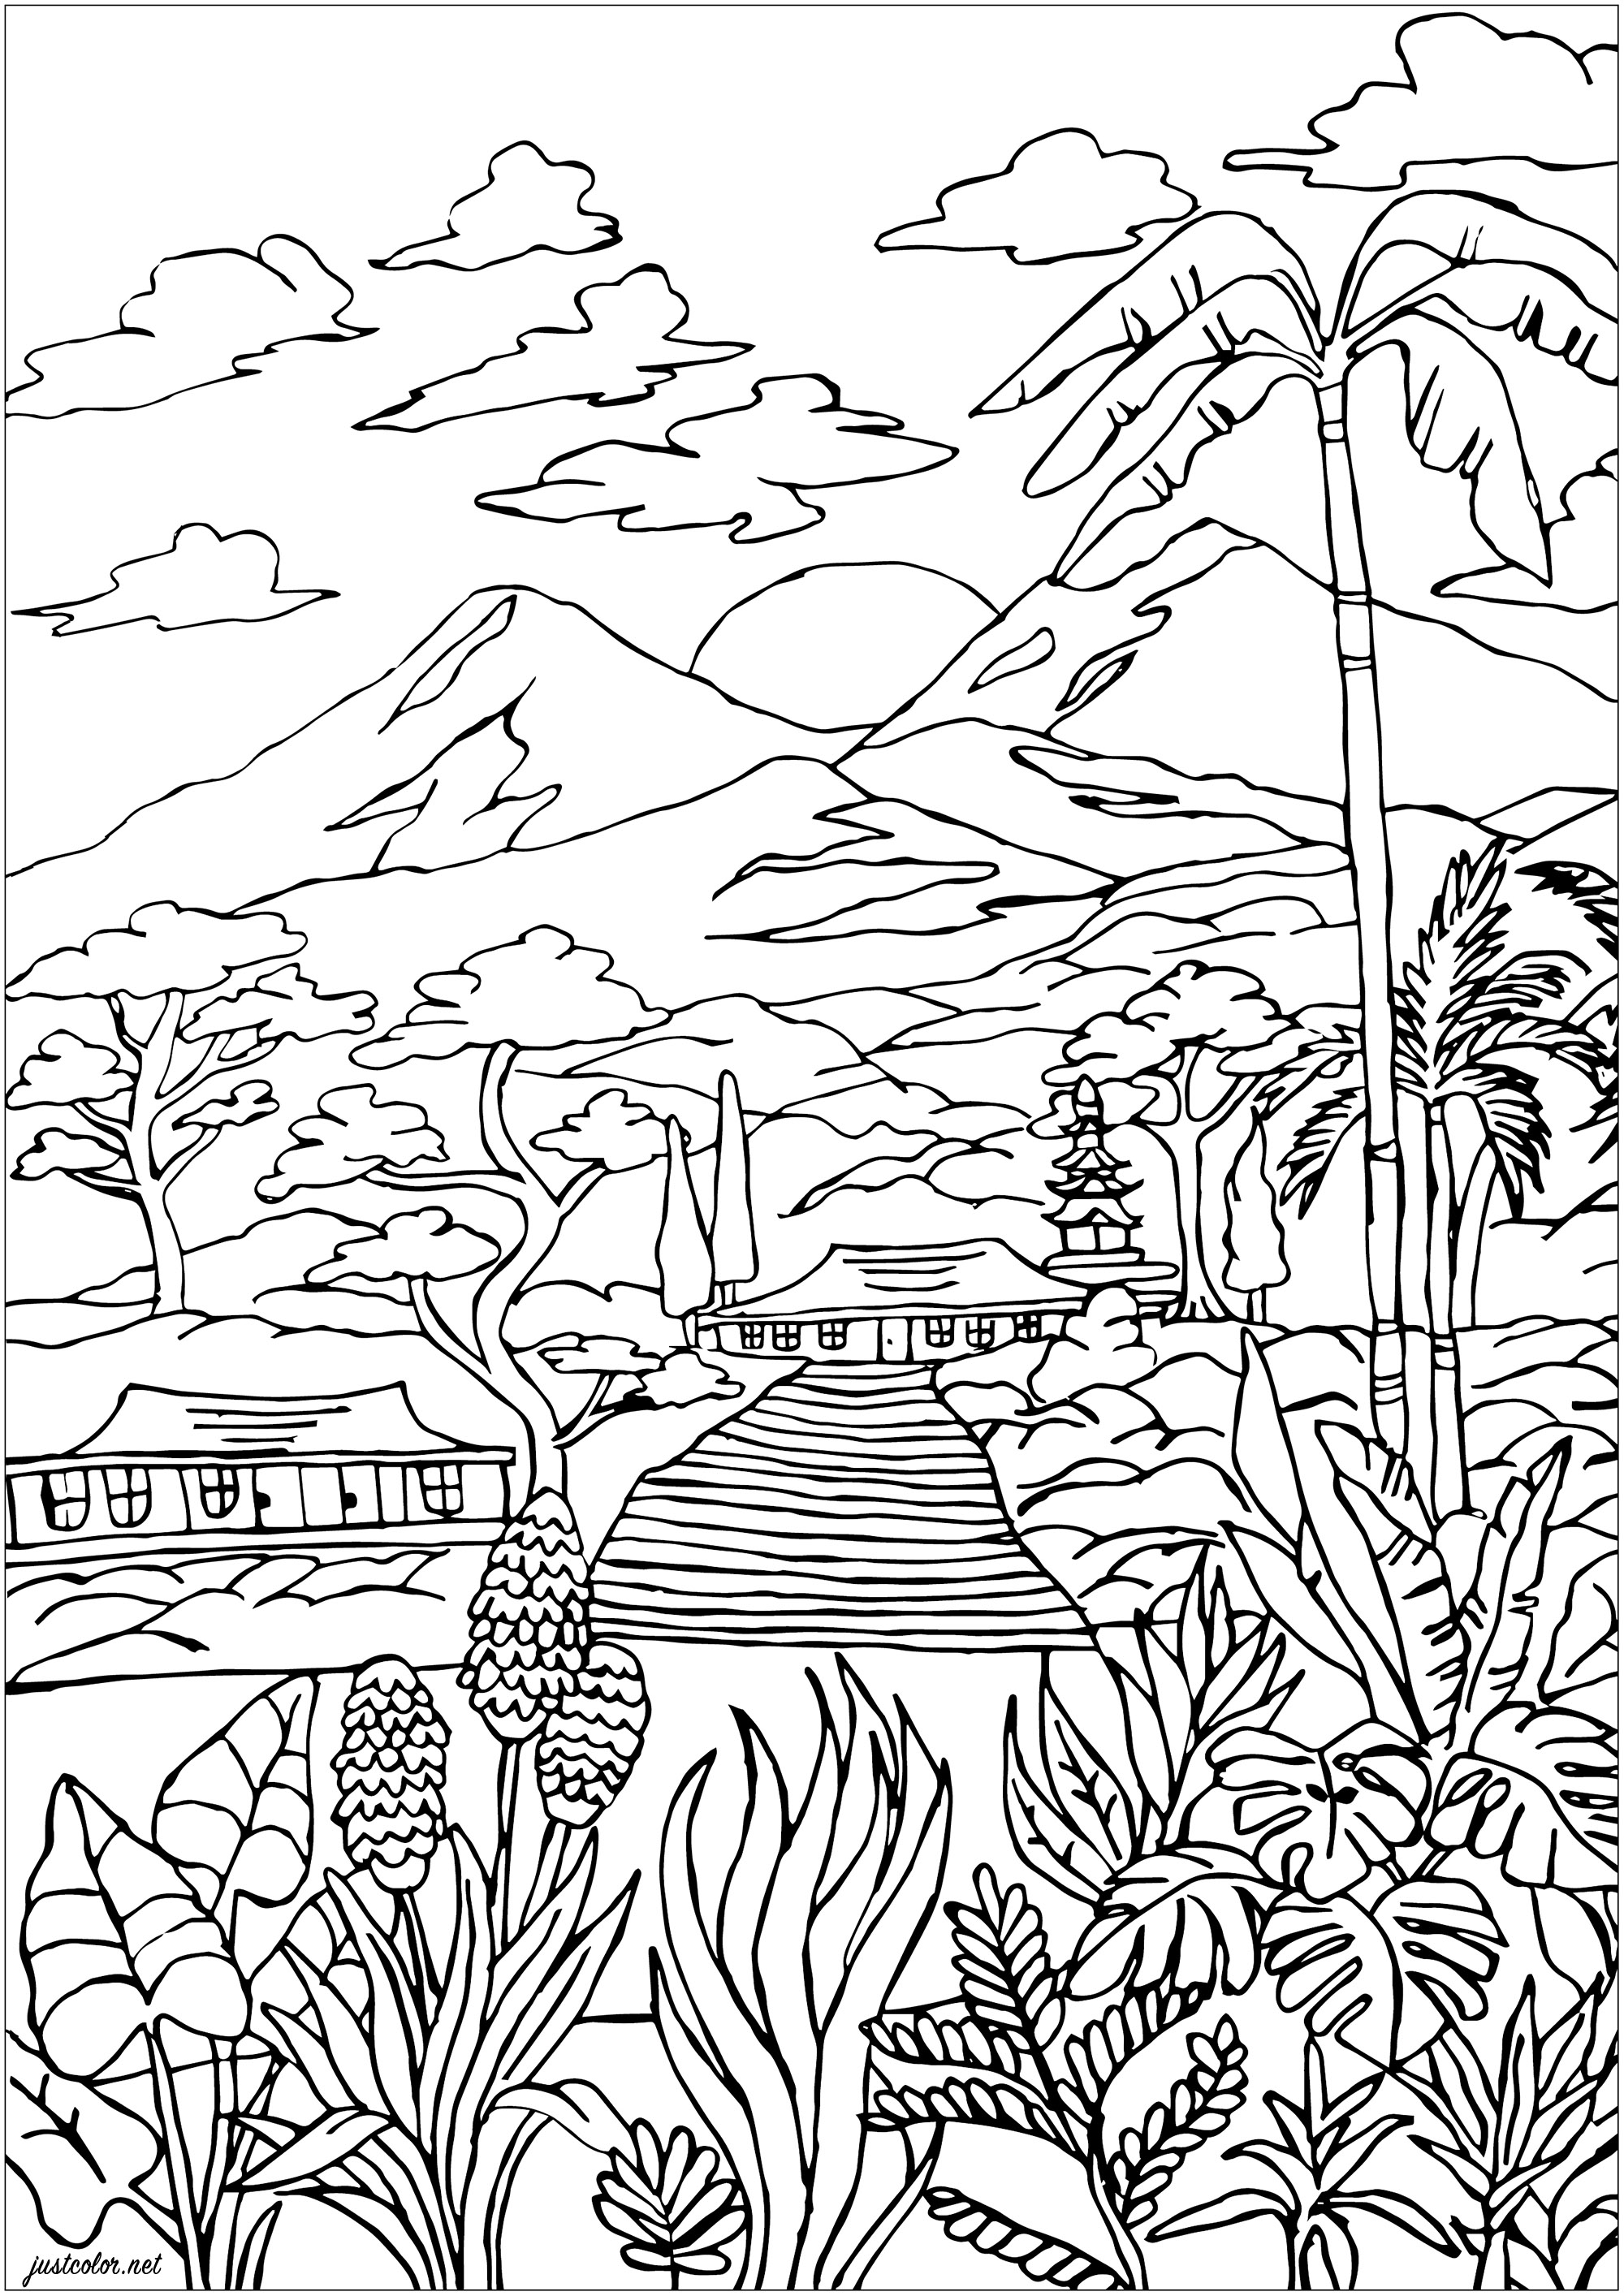 Die Landschaft von Martinique: Vulkane, kreolische Häuser, üppige Vegetation mit Palmen und schönen Pflanzen zum Ausmalen.  Martinique ist nach Trinidad und Guadeloupe die drittgrößte Insel der Kleinen Antillen. Sie erstreckt sich über 70 km Länge und 30 km Breite.